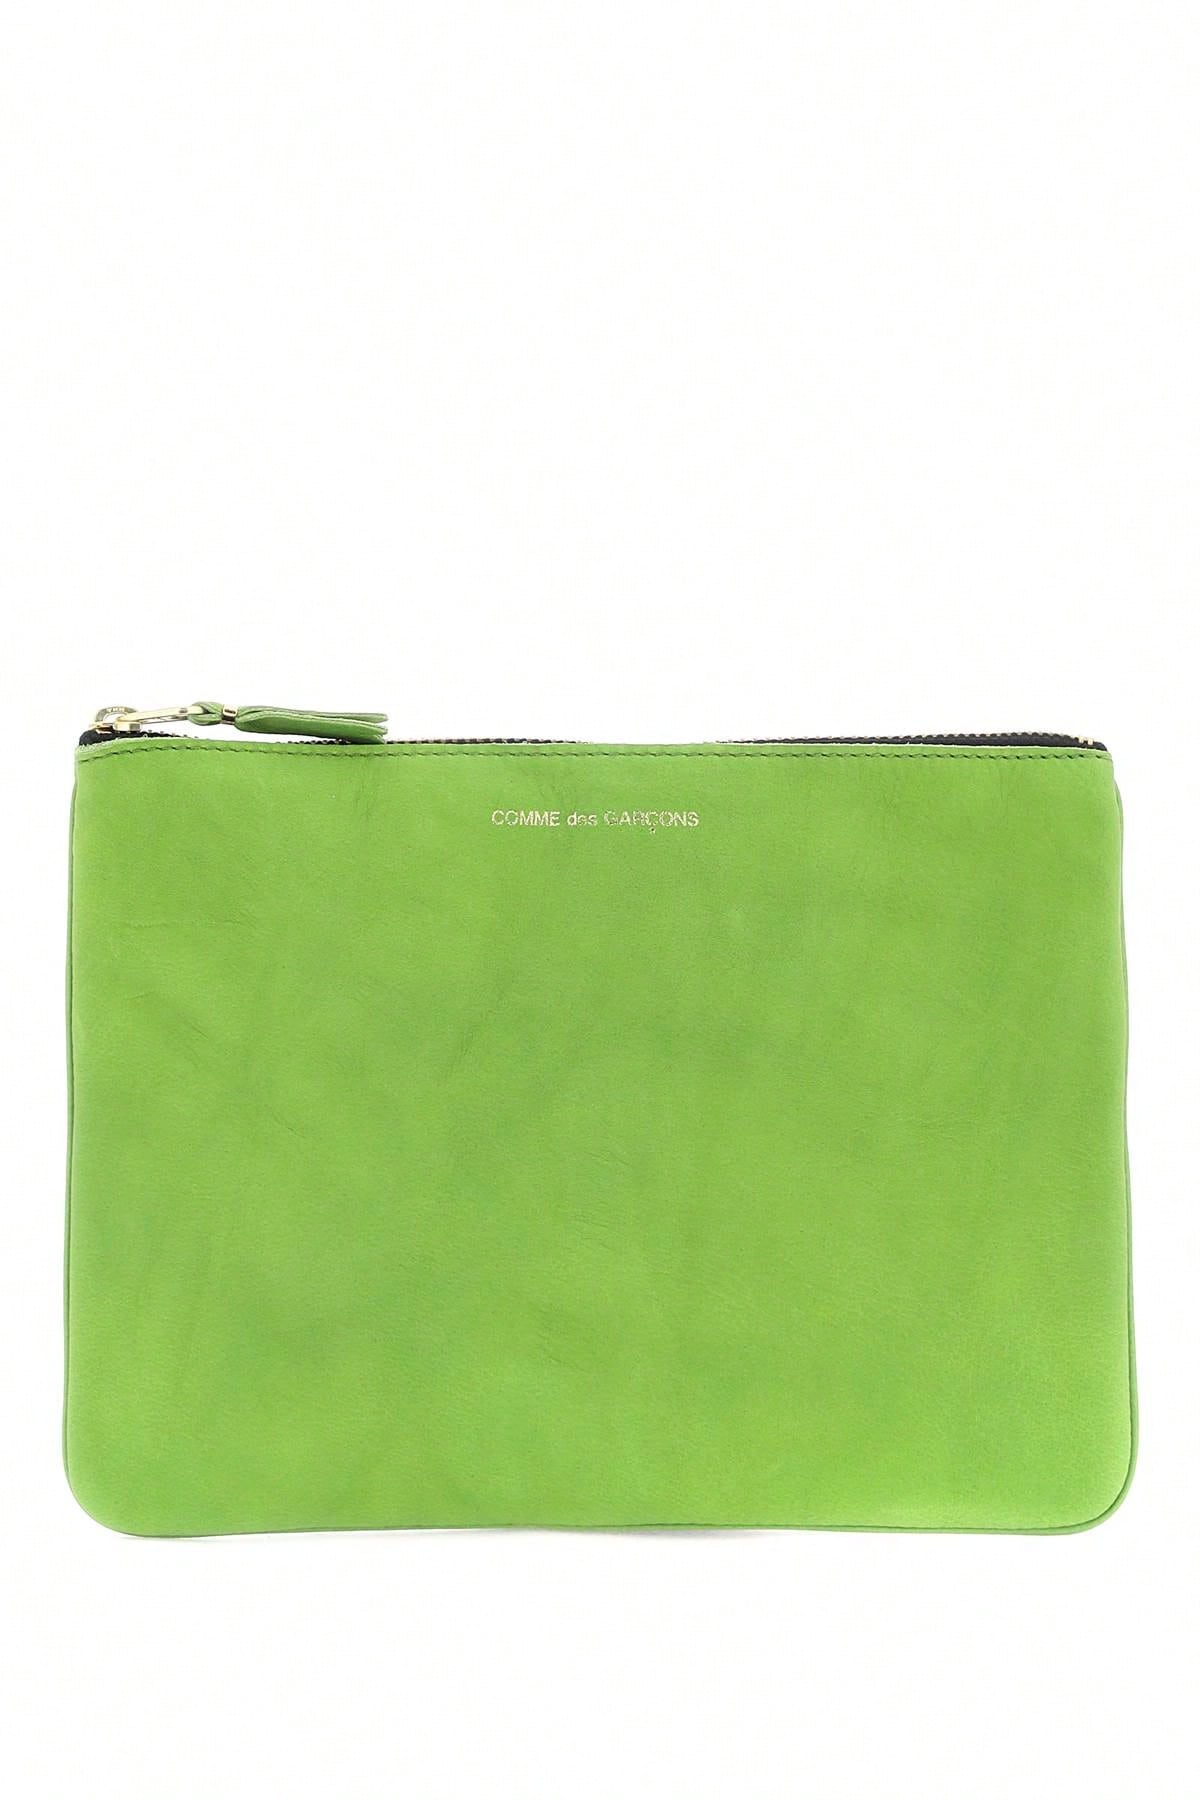 Классический кошелек Comme Des Garcons, зеленый классический кошелек comme des garcons зеленый